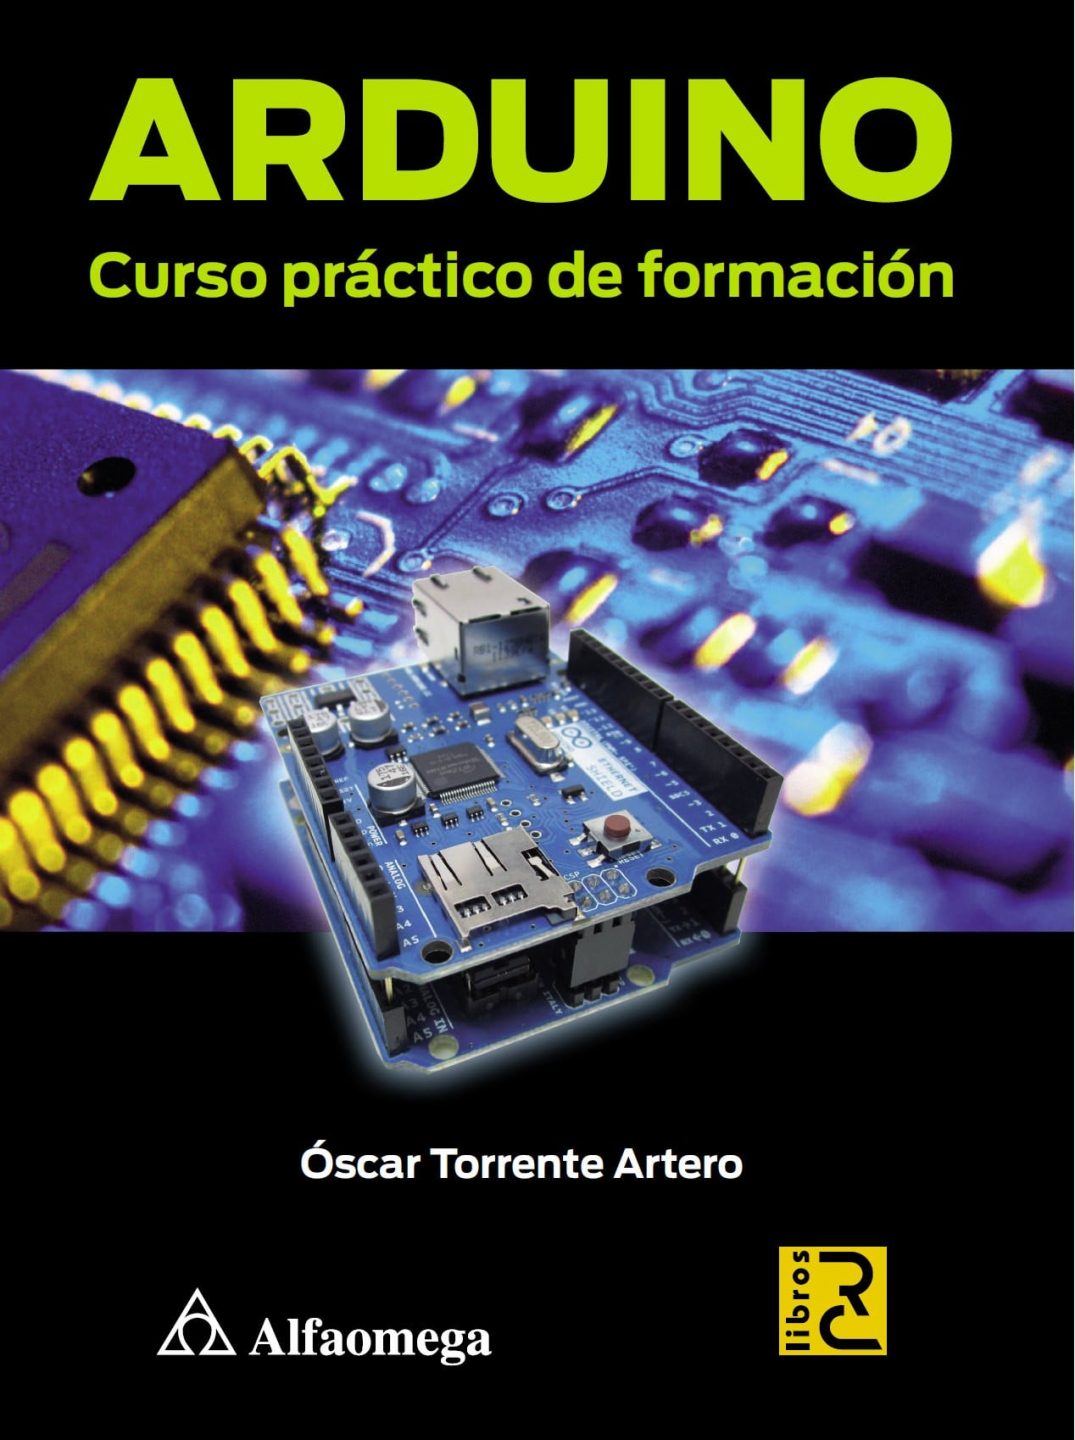 Arduino Curso Práctico de Formación 1 Edición Óscar Torrente Artero PDF